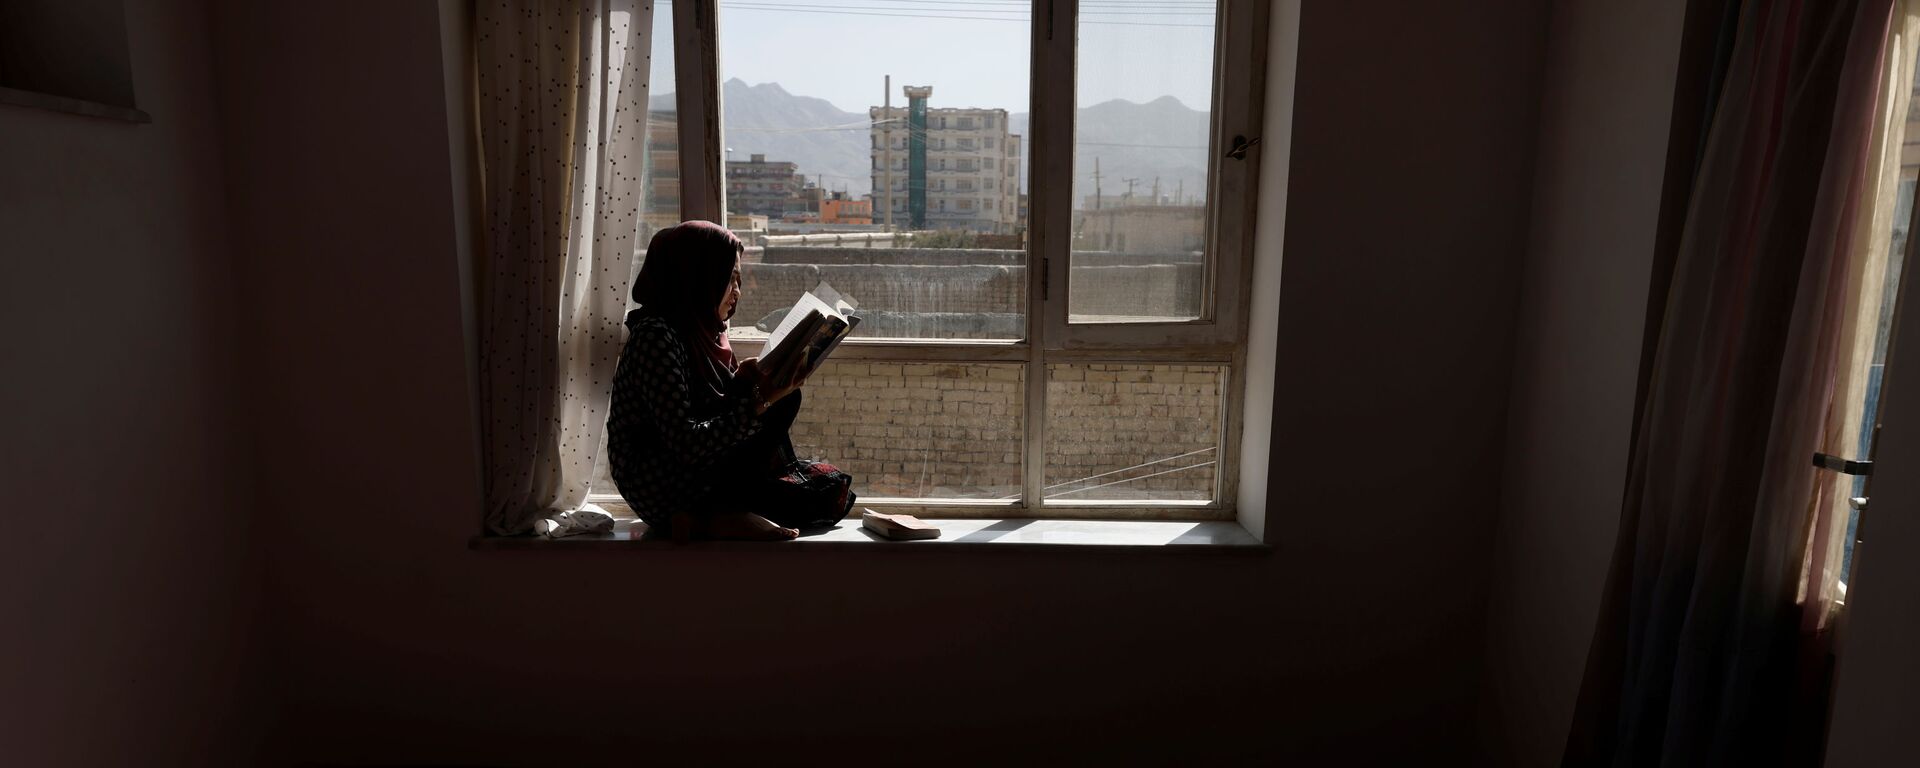 20-летняя студентка Хава читает книгу на подоконнике своего дома в Кабуле, Афганистан - Sputnik Таджикистан, 1920, 05.11.2021